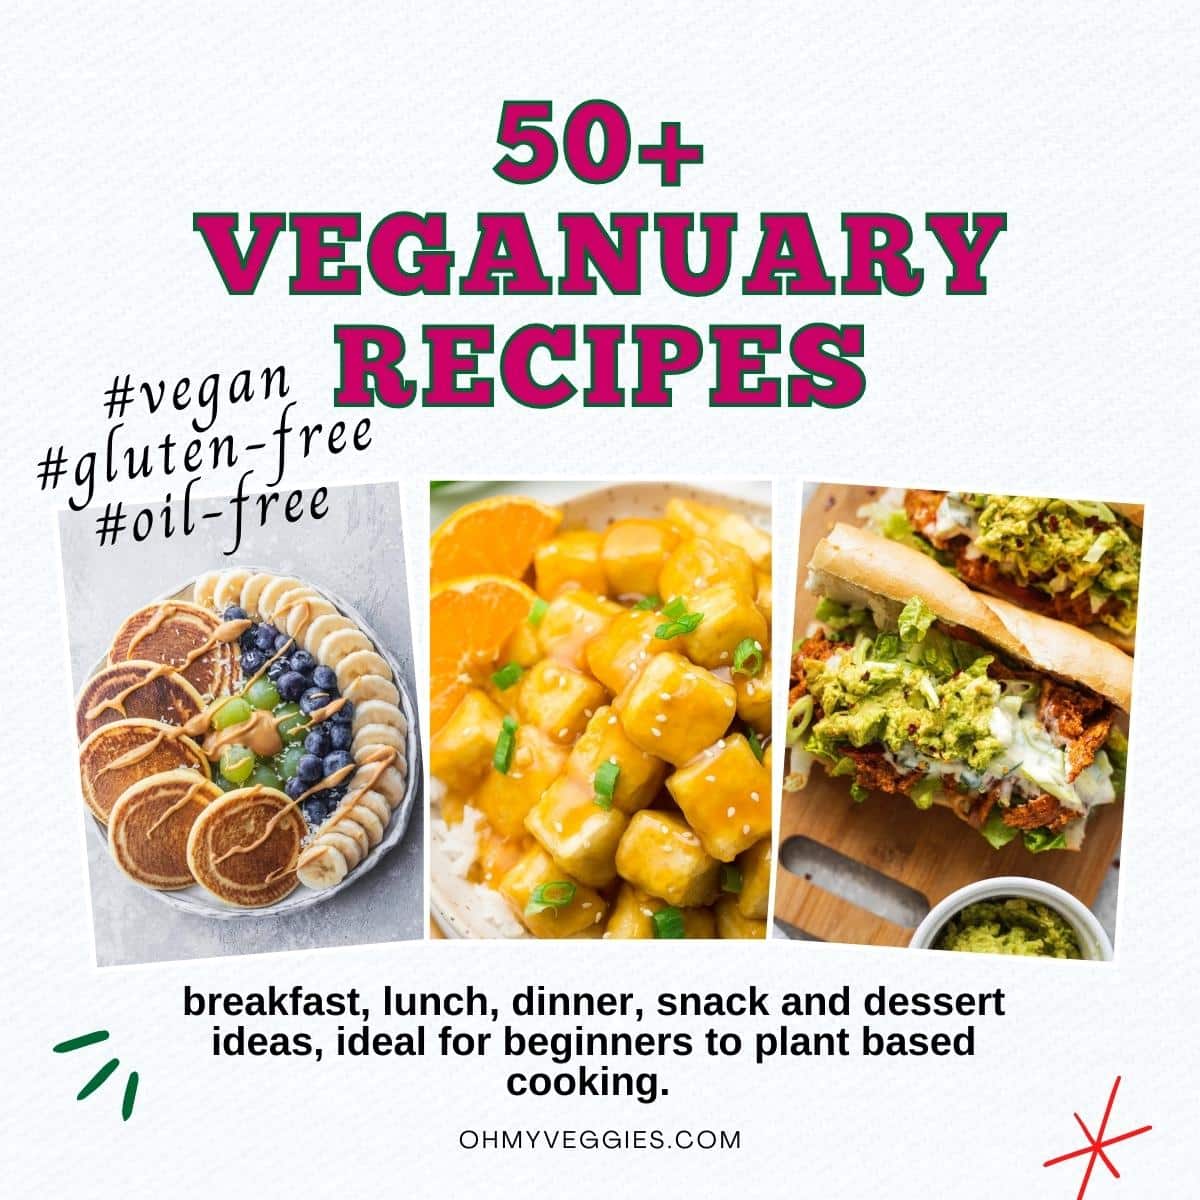 Veganuary Recipes